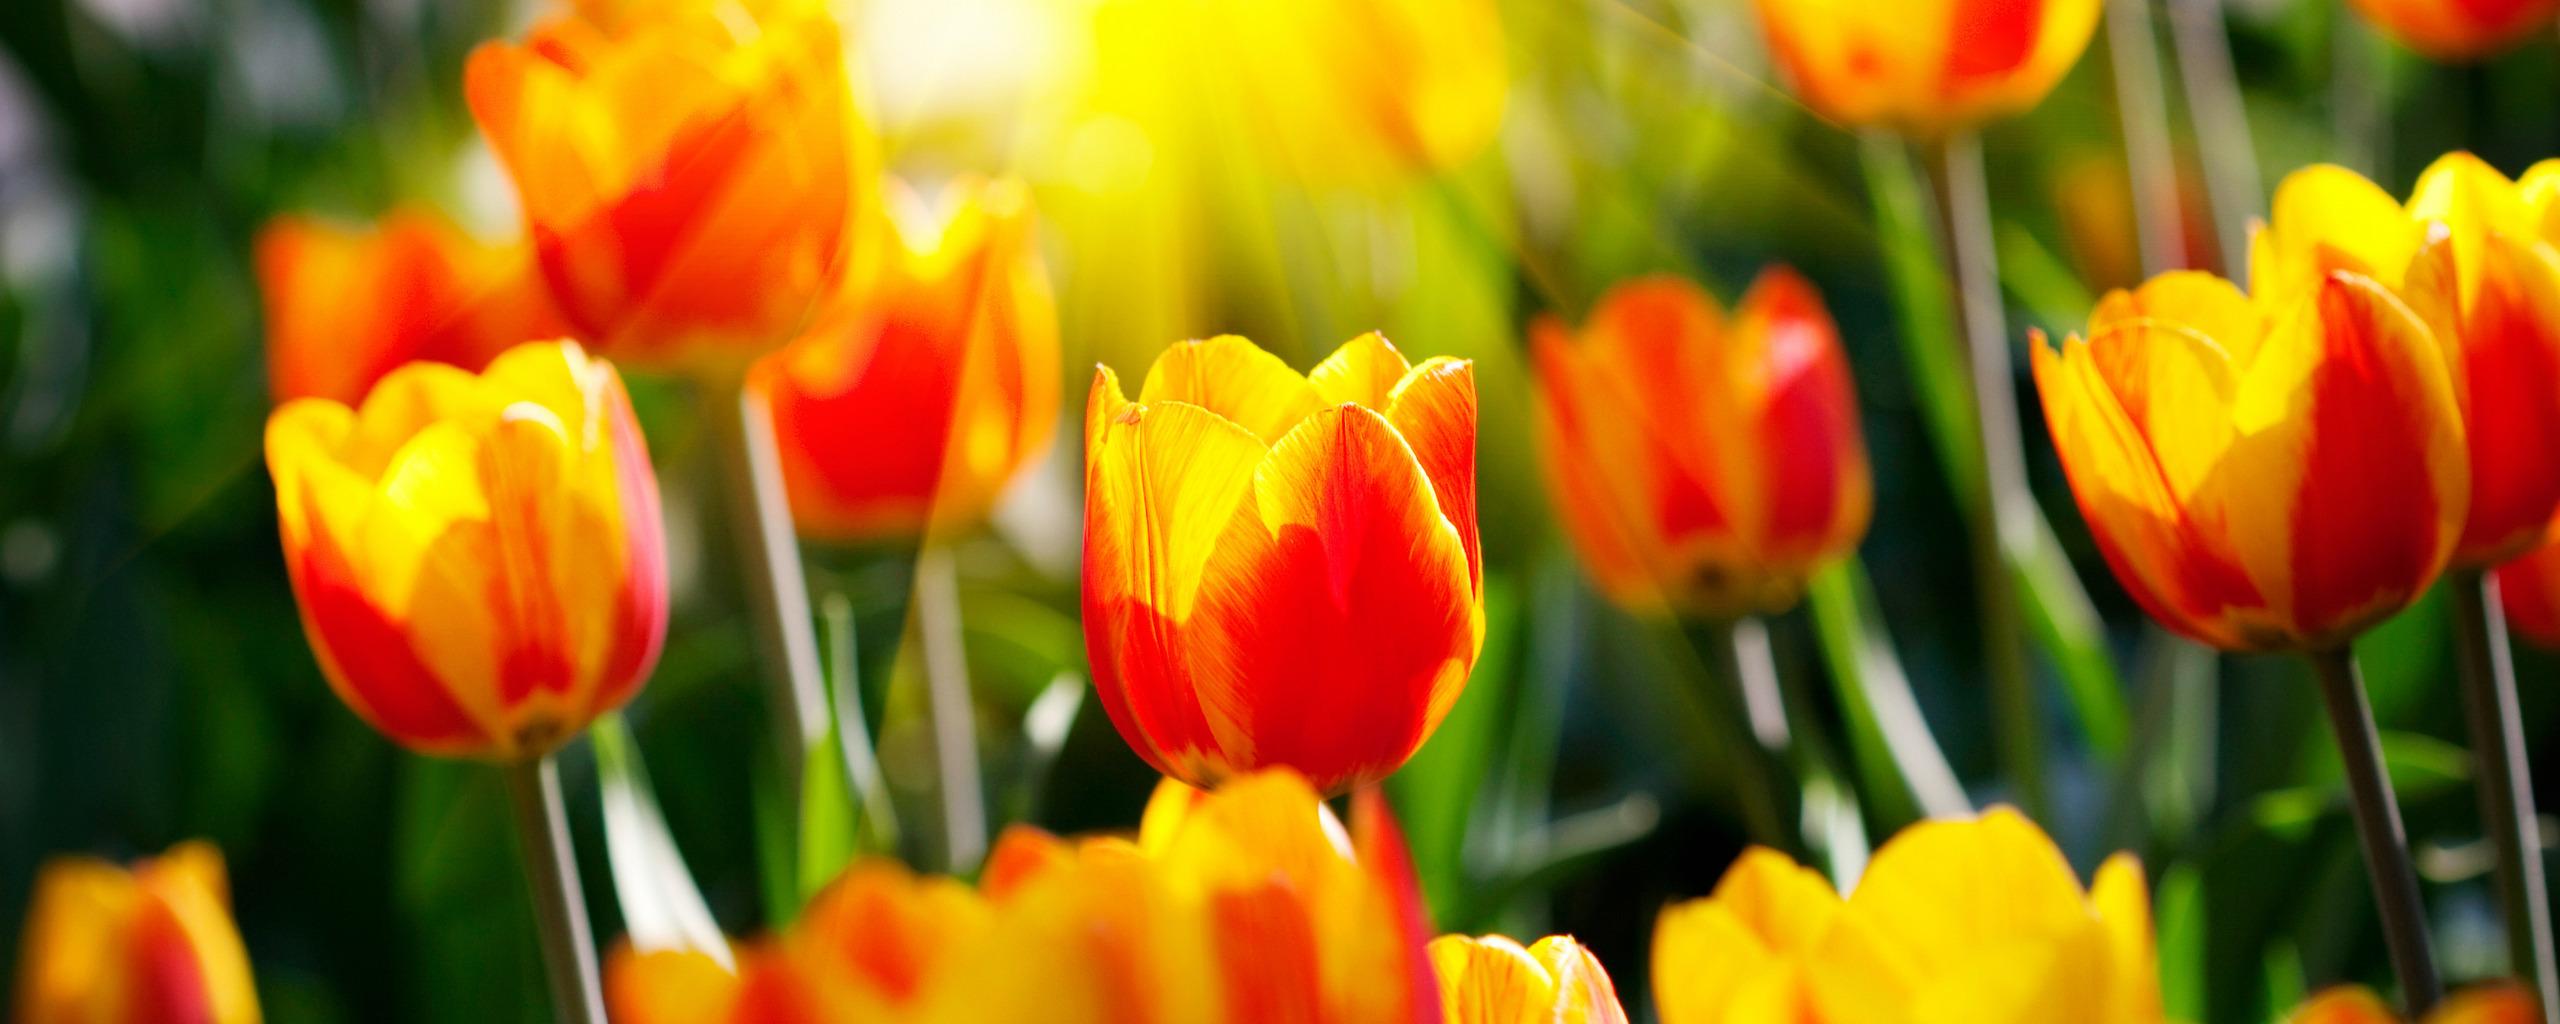 Солнечные тюльпаны и неописуемые лучи солнца 2560x1024